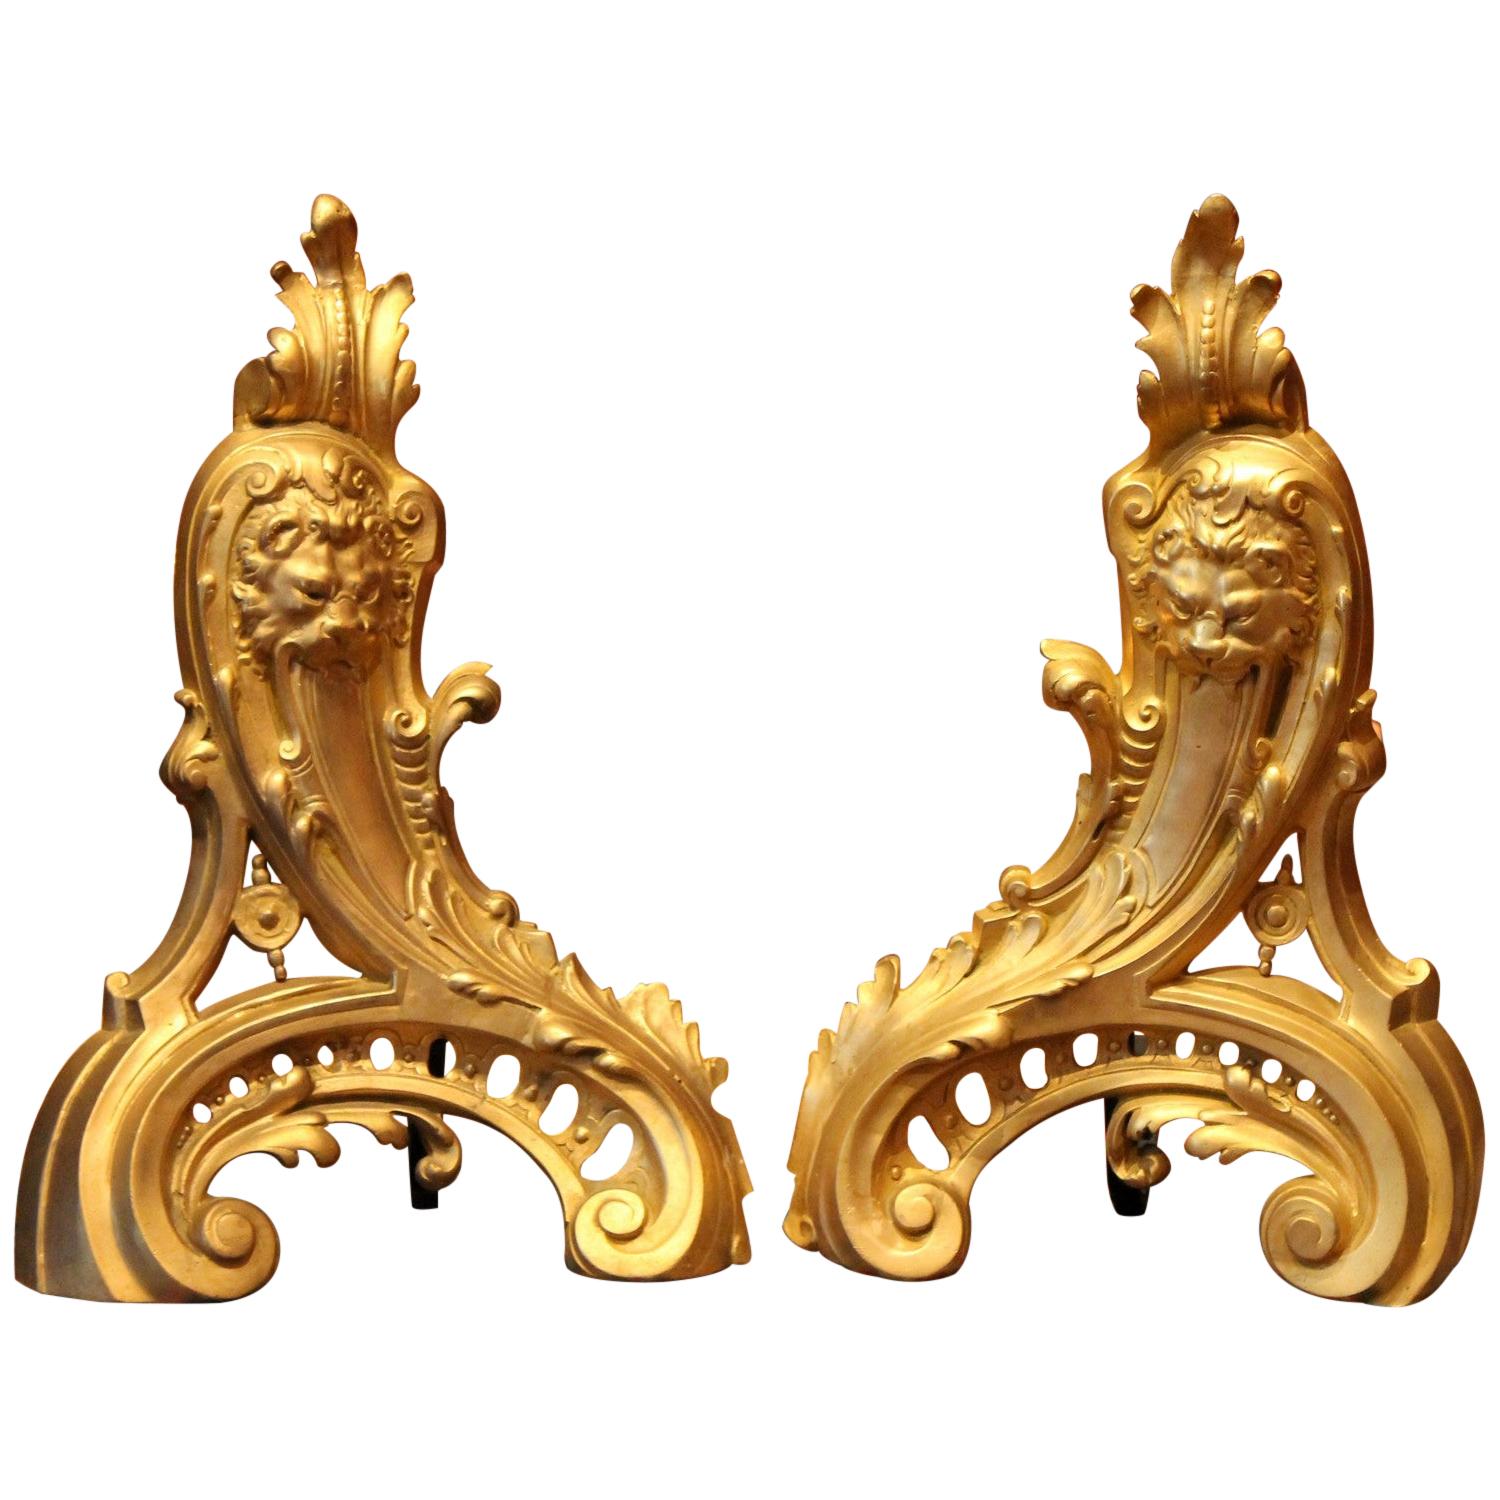 Chenets de cheminée français de style Louis XV du 19ème siècle en bronze doré à tête de lion